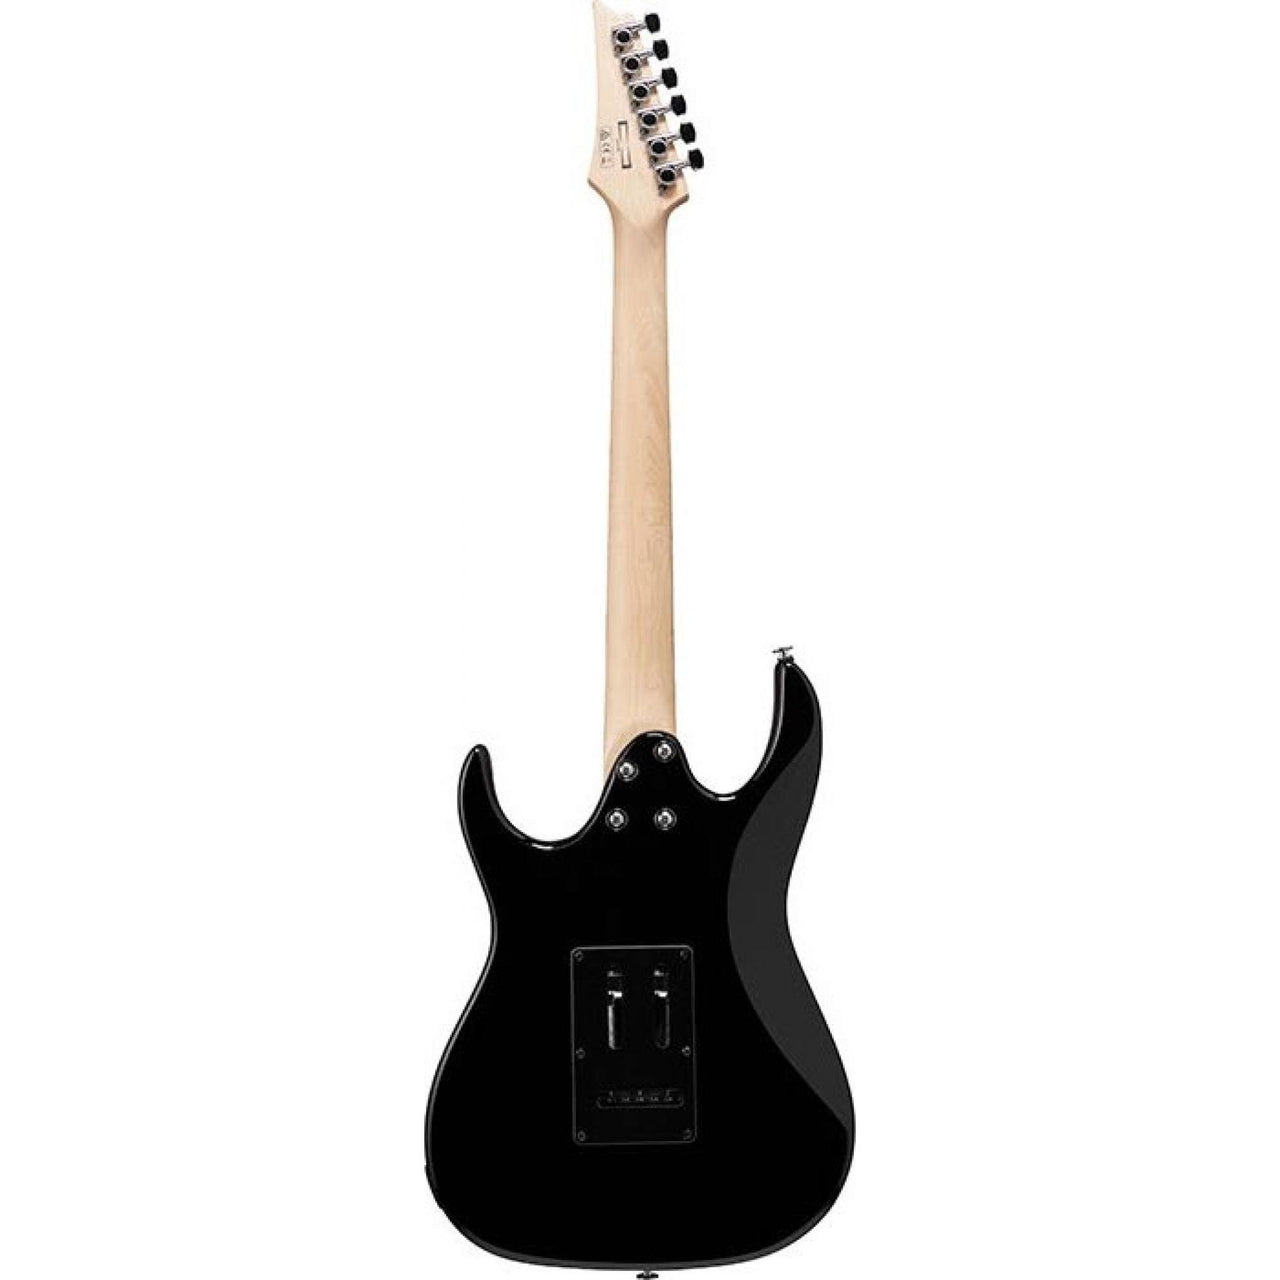 Guitarra Ibanez Grx40bkn Electrica Noche Negra